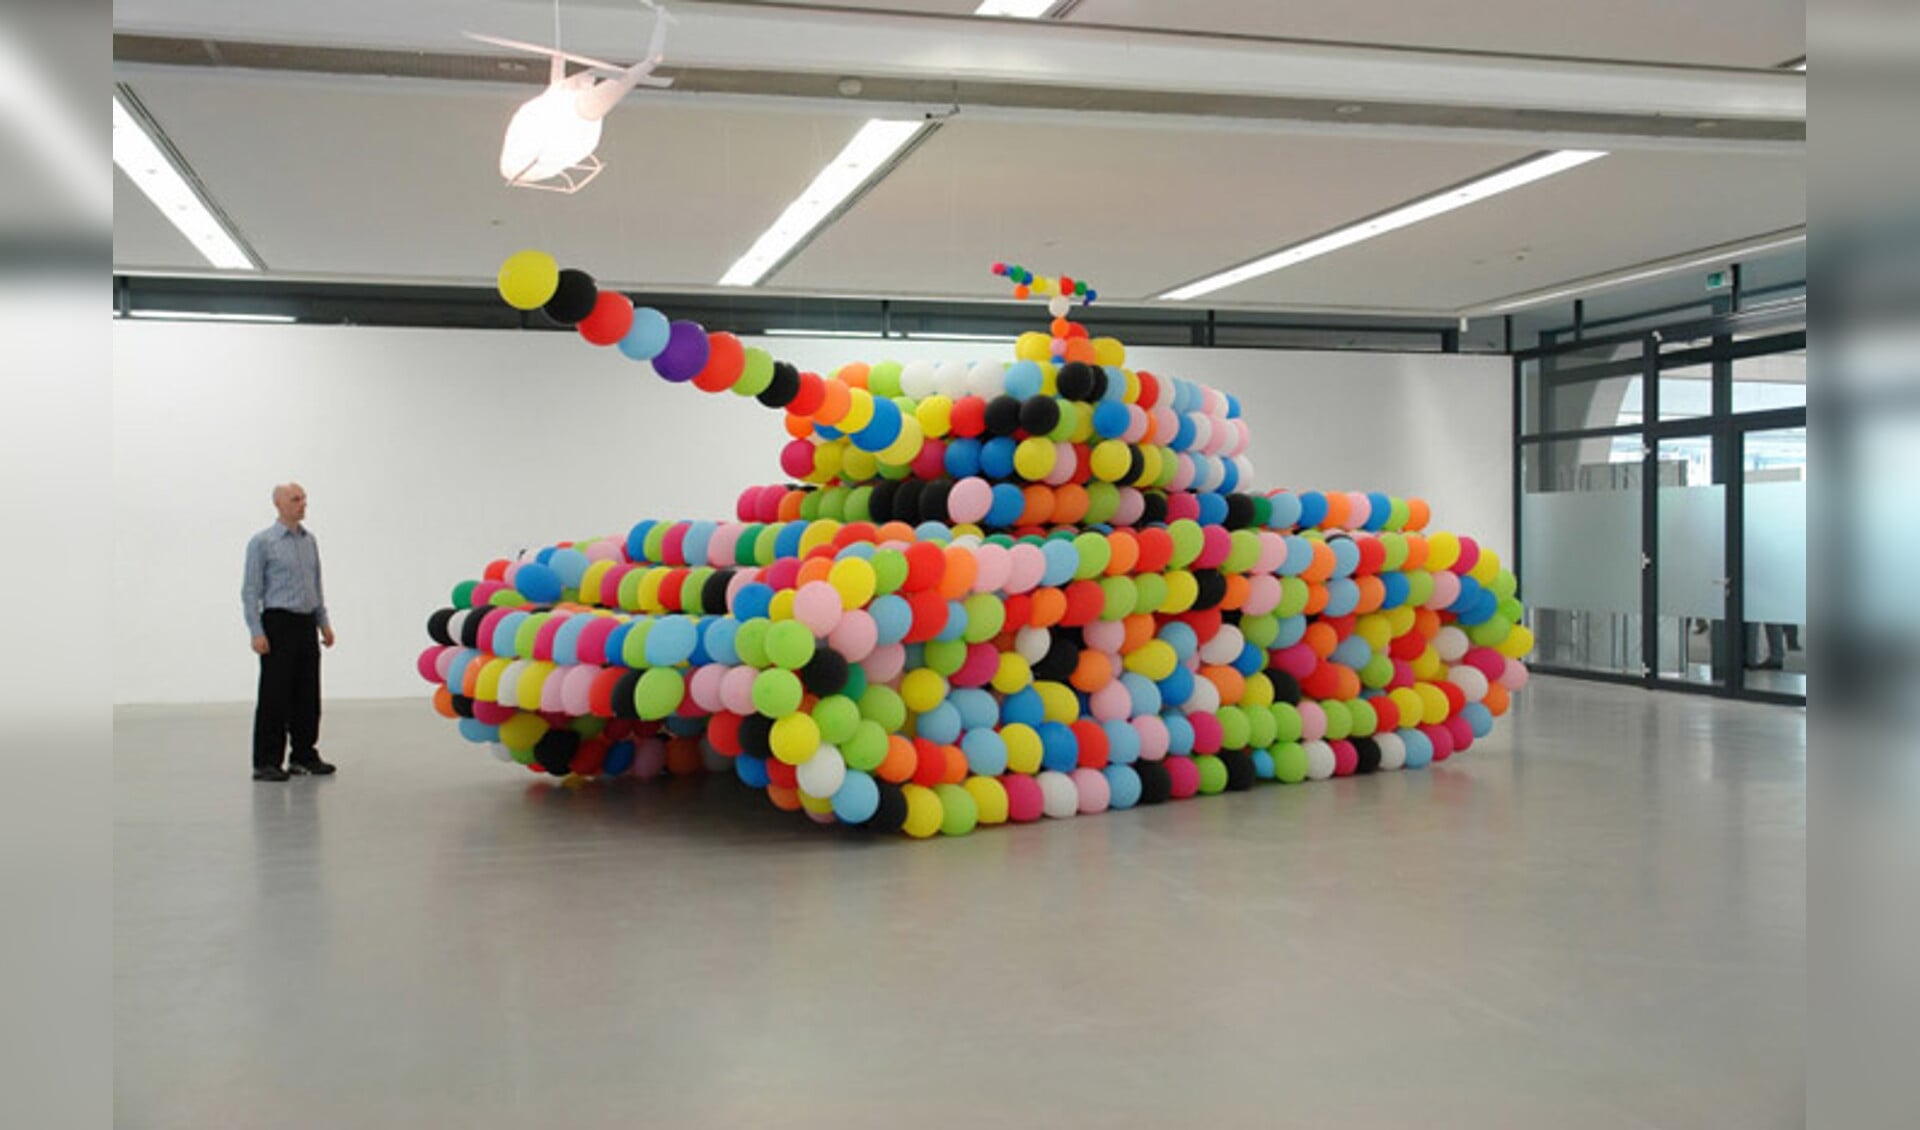 Ballonkunstenaar Ricardo gaat ter plekke een tank van ballonnen maken op ware grootte. (Foto: Aangeleverd)